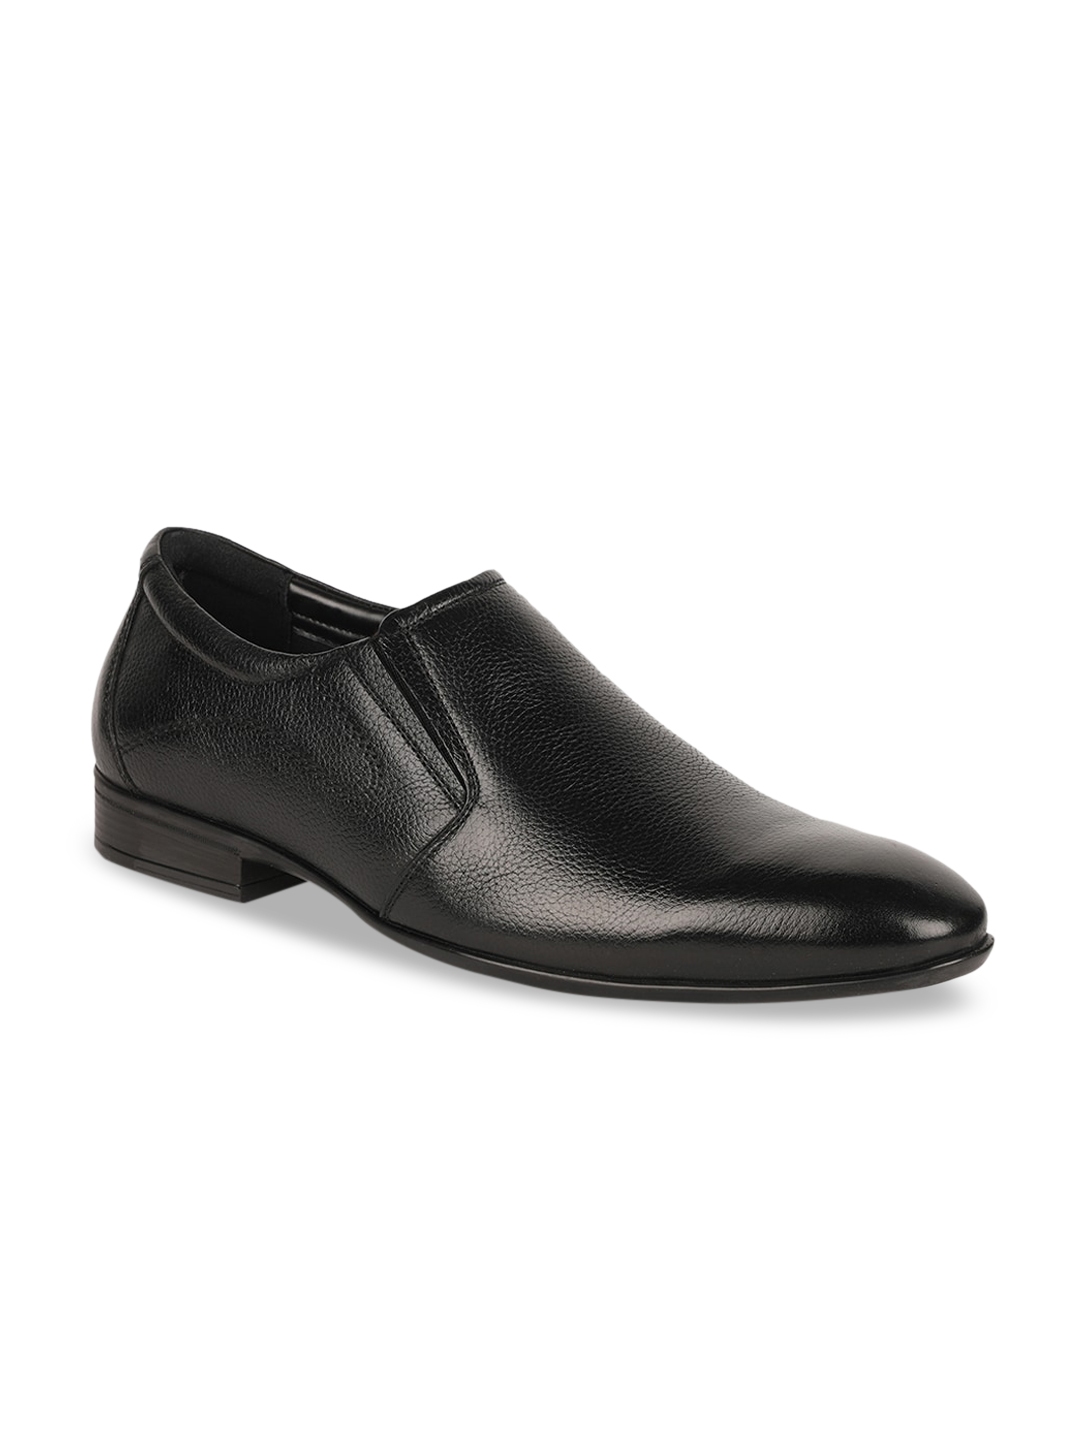 Buy Bata Men Black Solid Leather Formal Shoe - Formal Shoes for Men ...